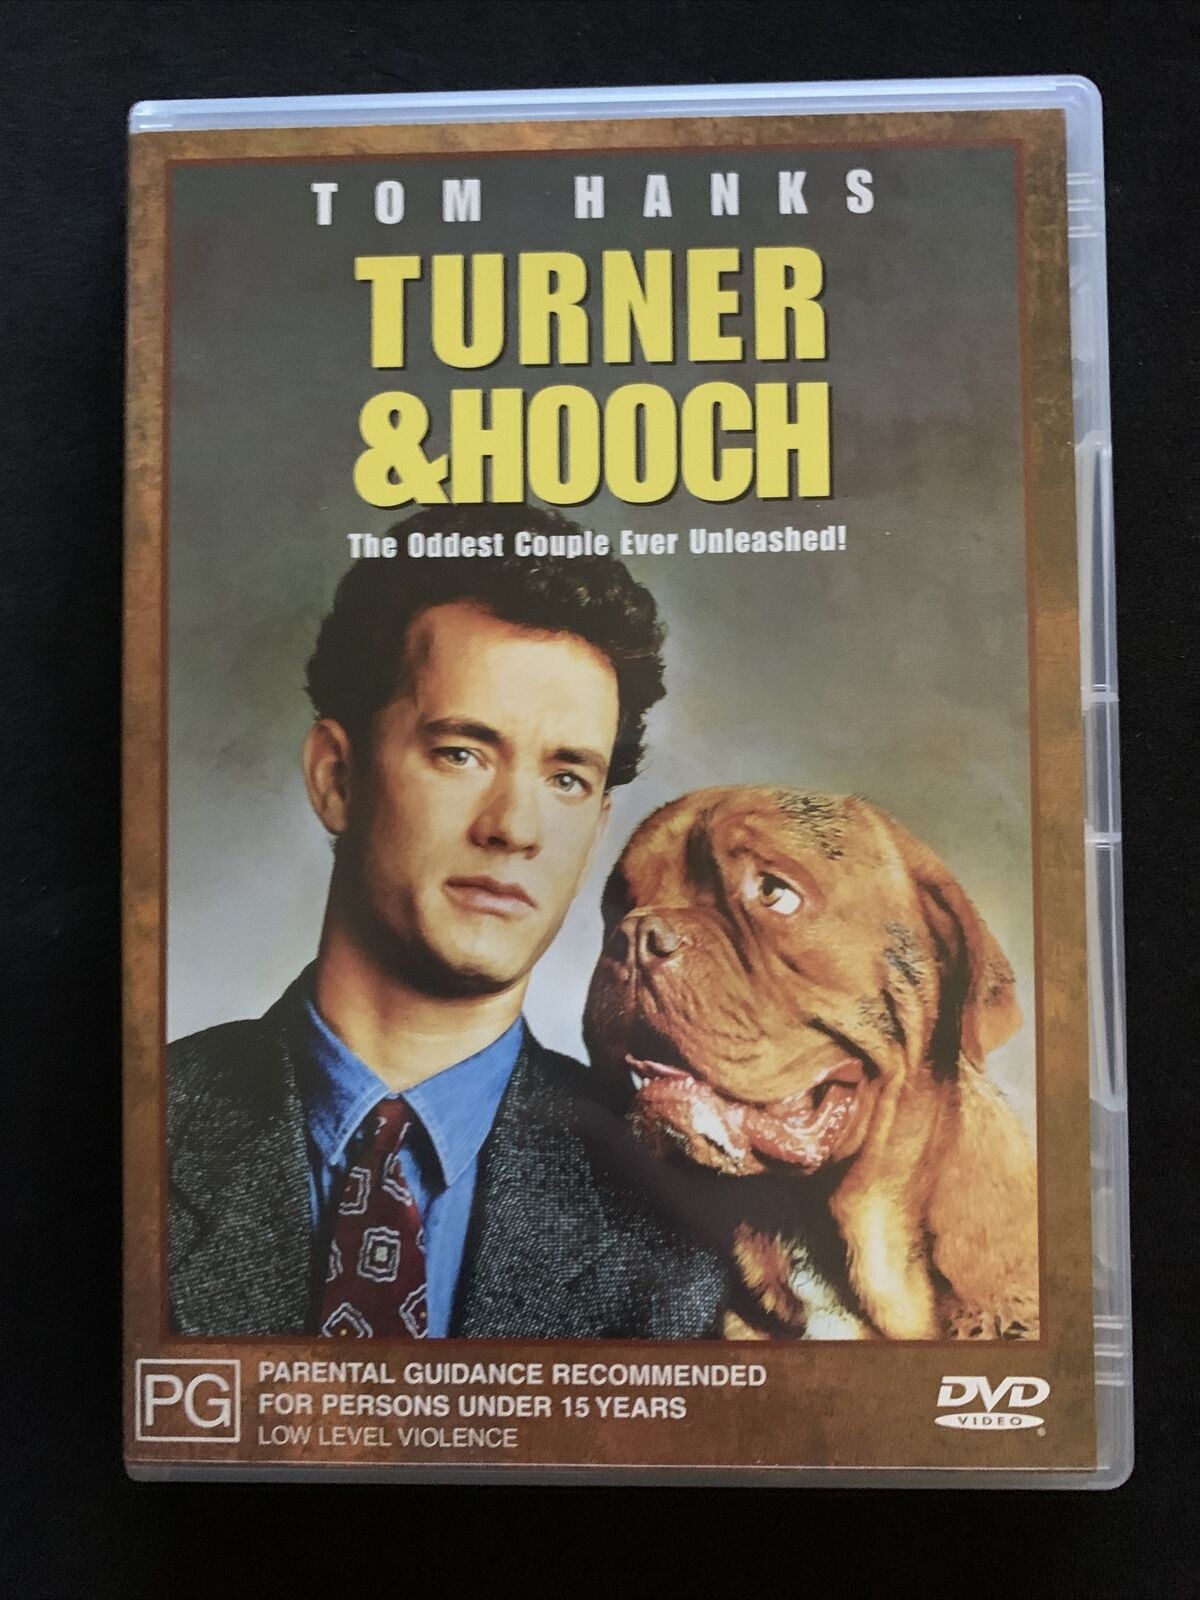 Turner And Hooch (DVD, 1989) Tom Hanks, Craig T. Nelson - Region 4